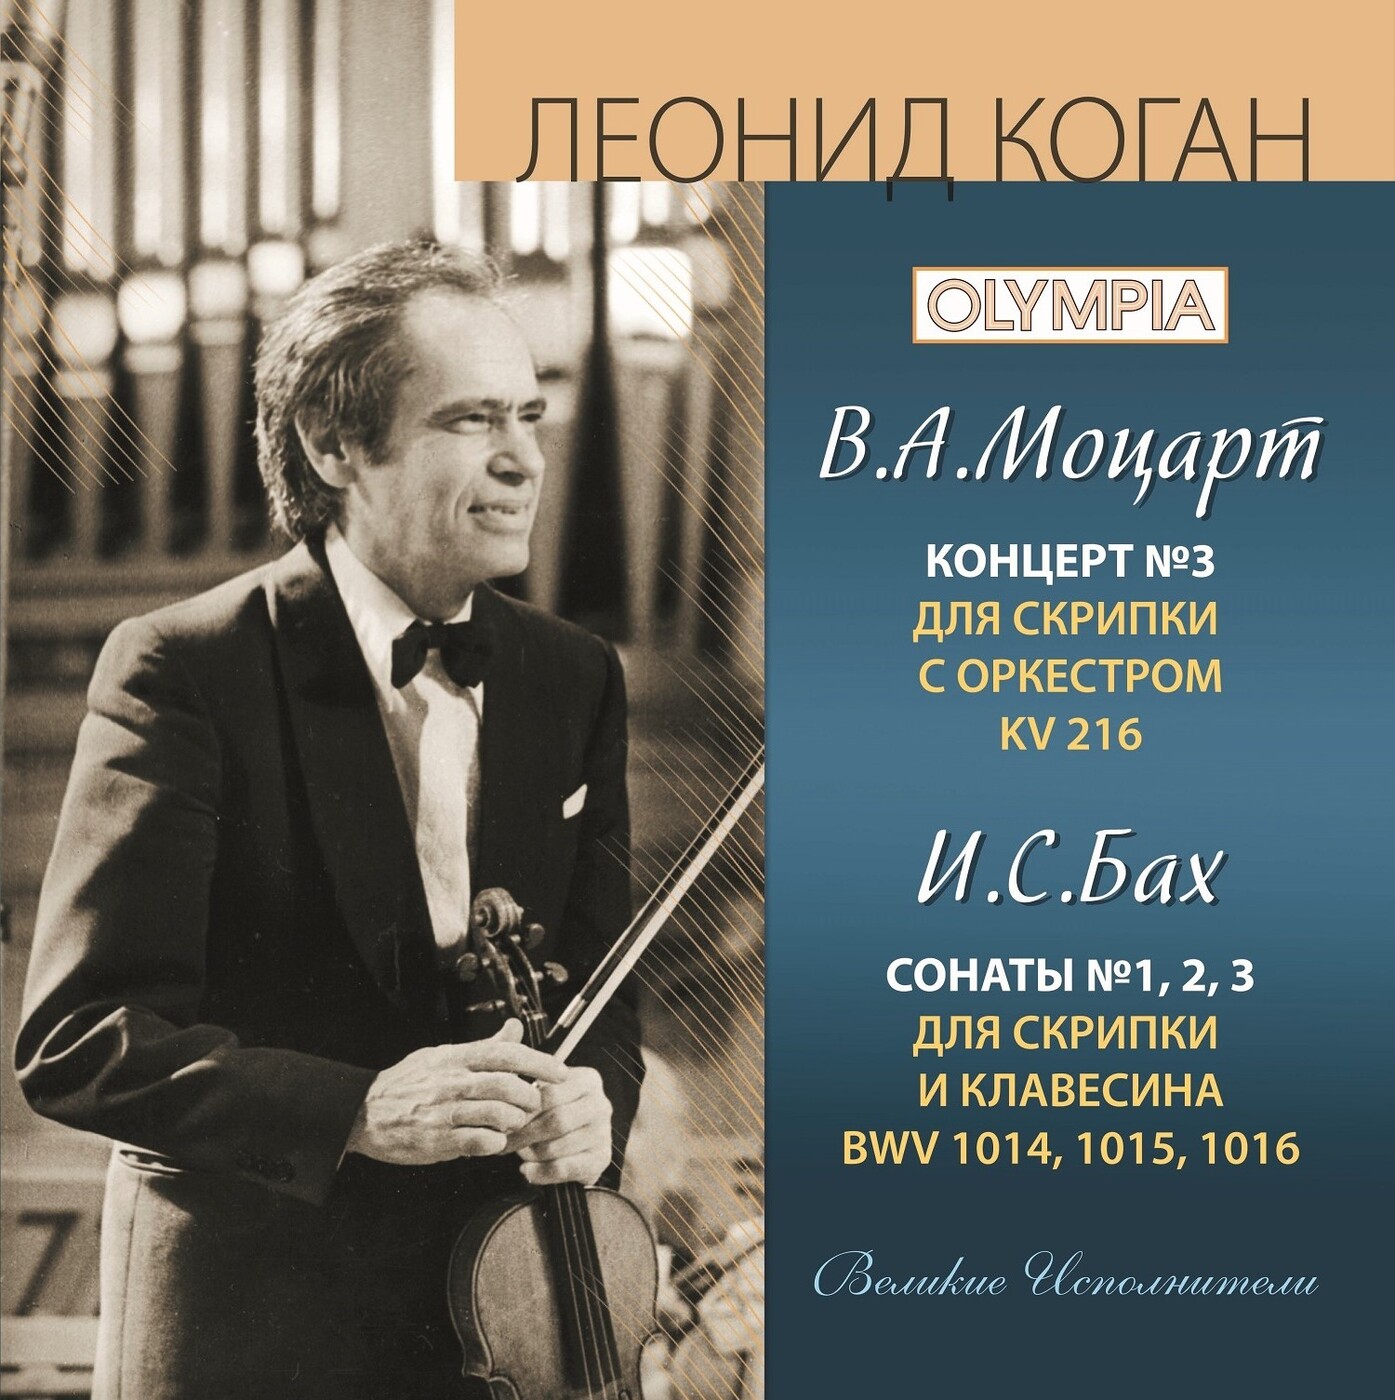 Музыка моцарта скрипка. Скрипичный концерт Моцарта. Коган концерт для скрипки с оркестром. Концерт Моцарта в Москве.